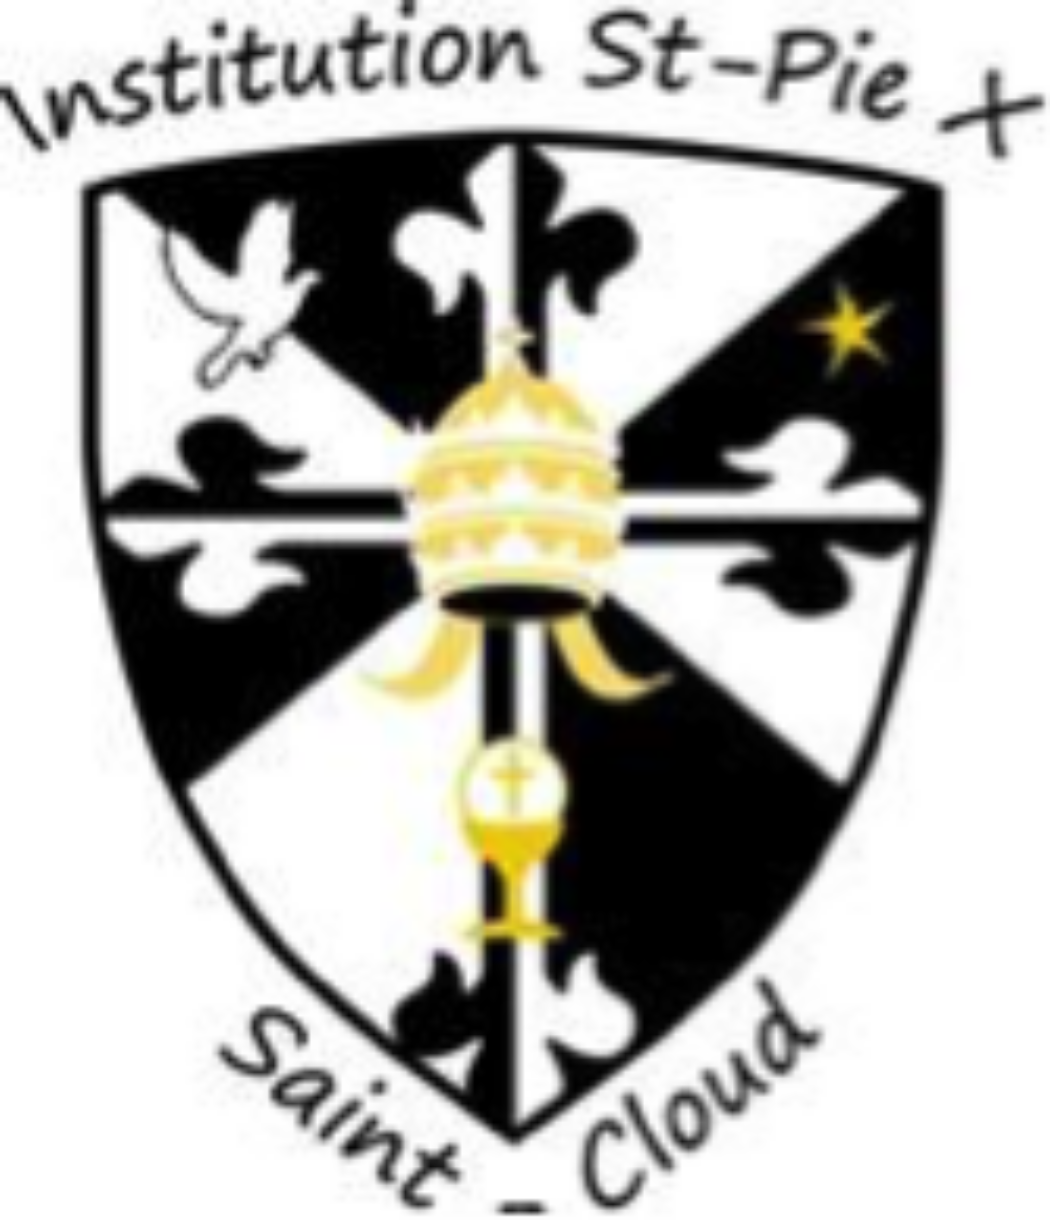 Urgence : l’Institution Saint-Pie X à Saint-Cloud cherche des professeurs